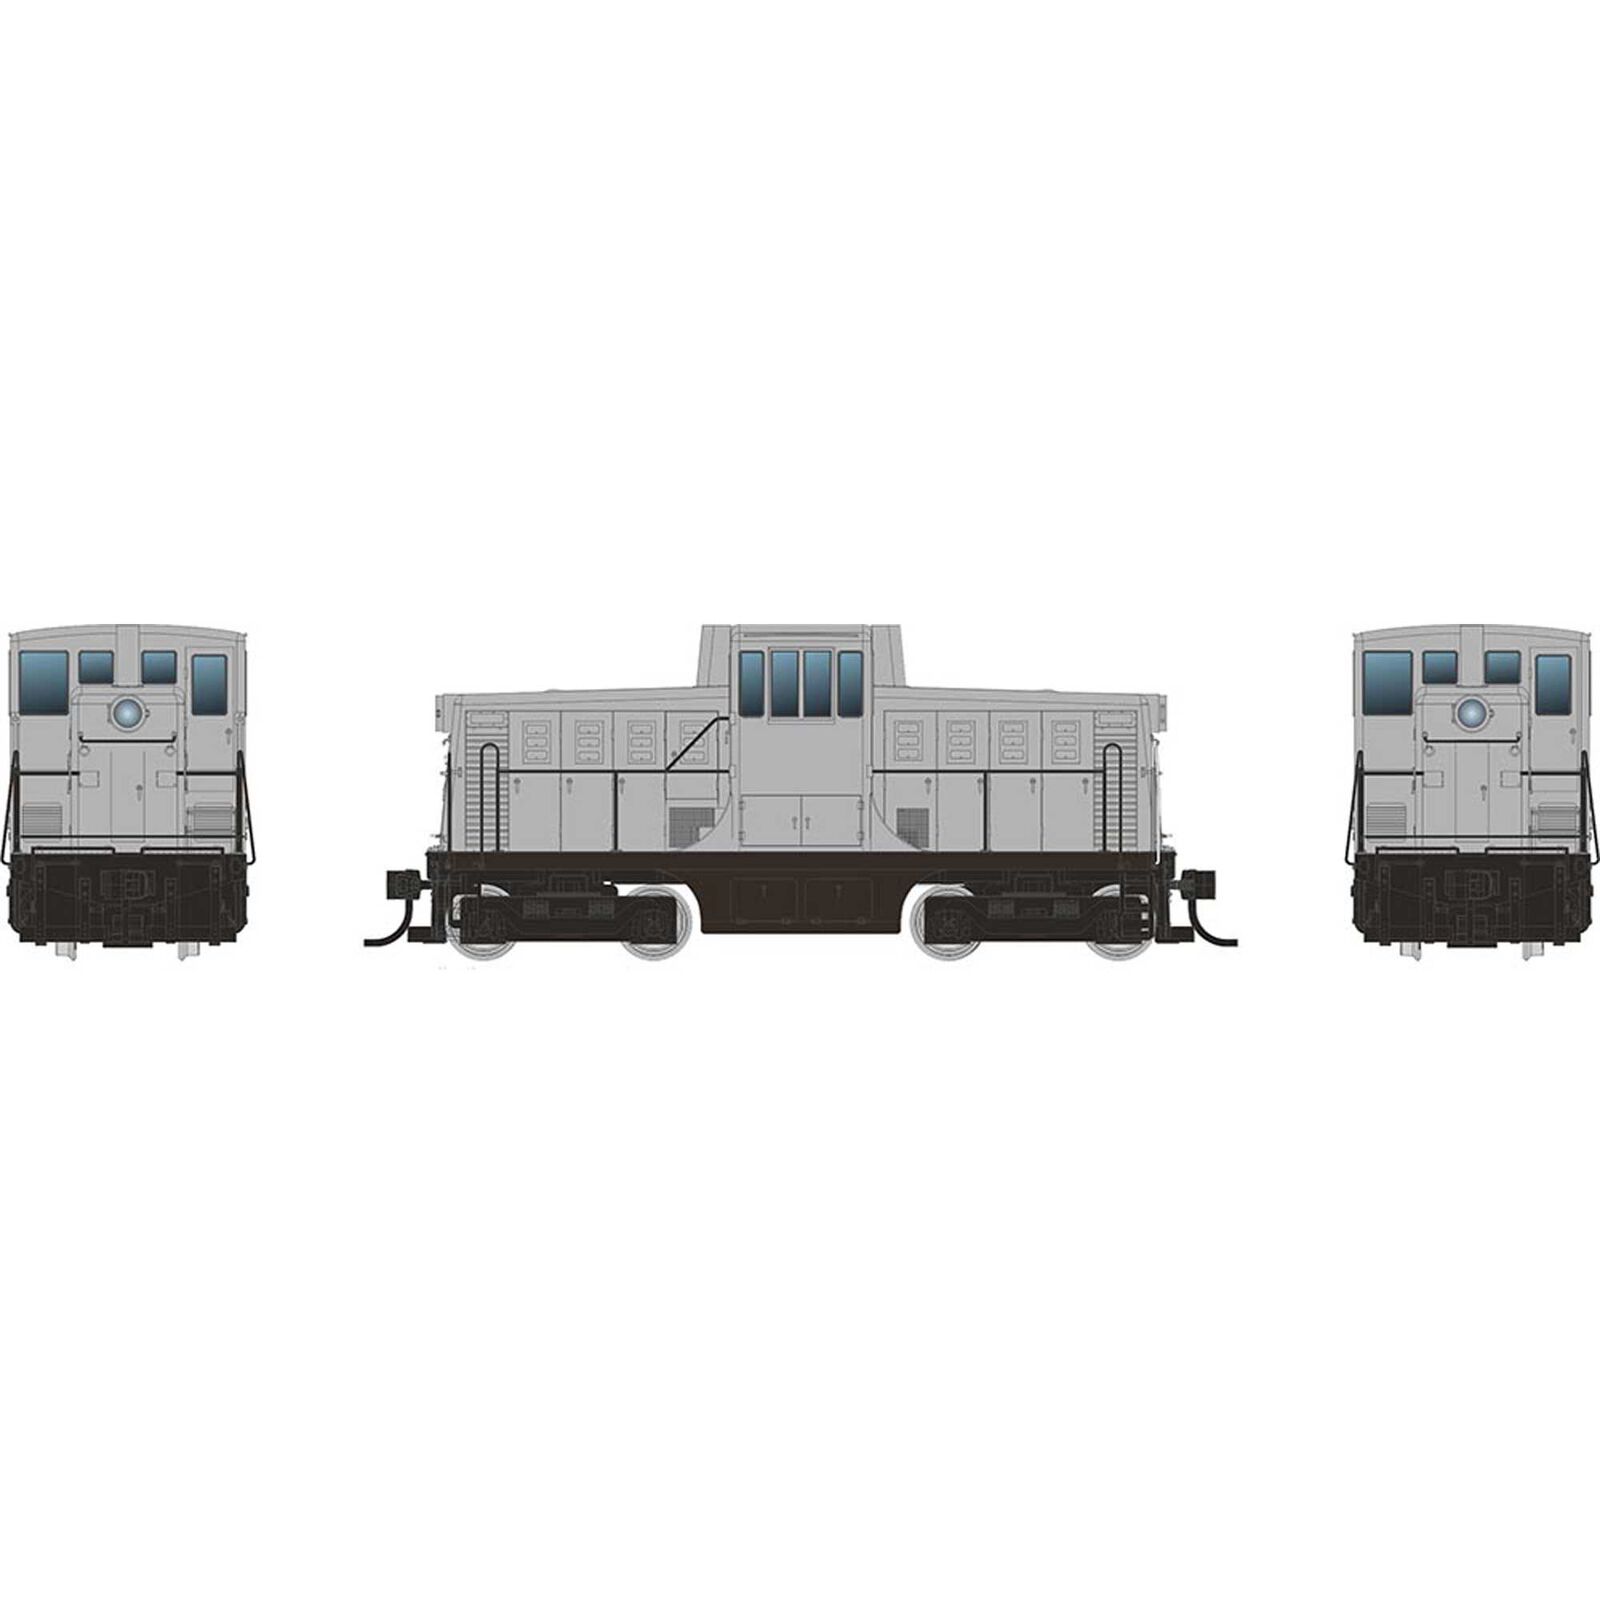 HO GE 44 Tonner Switcher Locomotive, Undecorated Phase Ic Body